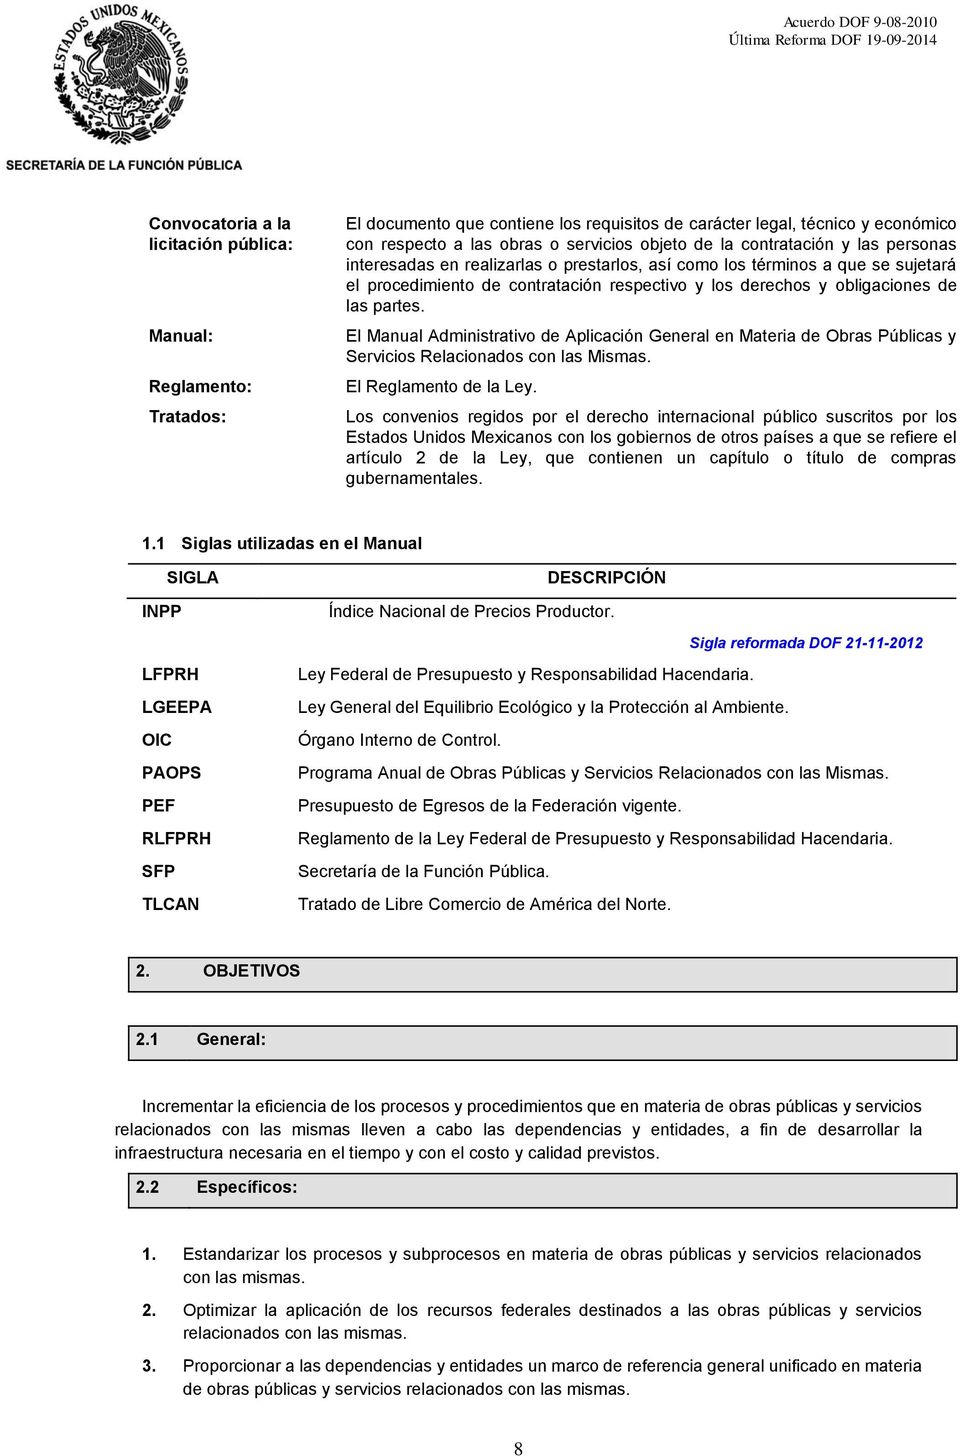 El Manual Administrativo de Aplicación General en Materia de Obras Públicas y Servicios Relacionados con las Mismas. El de la Ley.